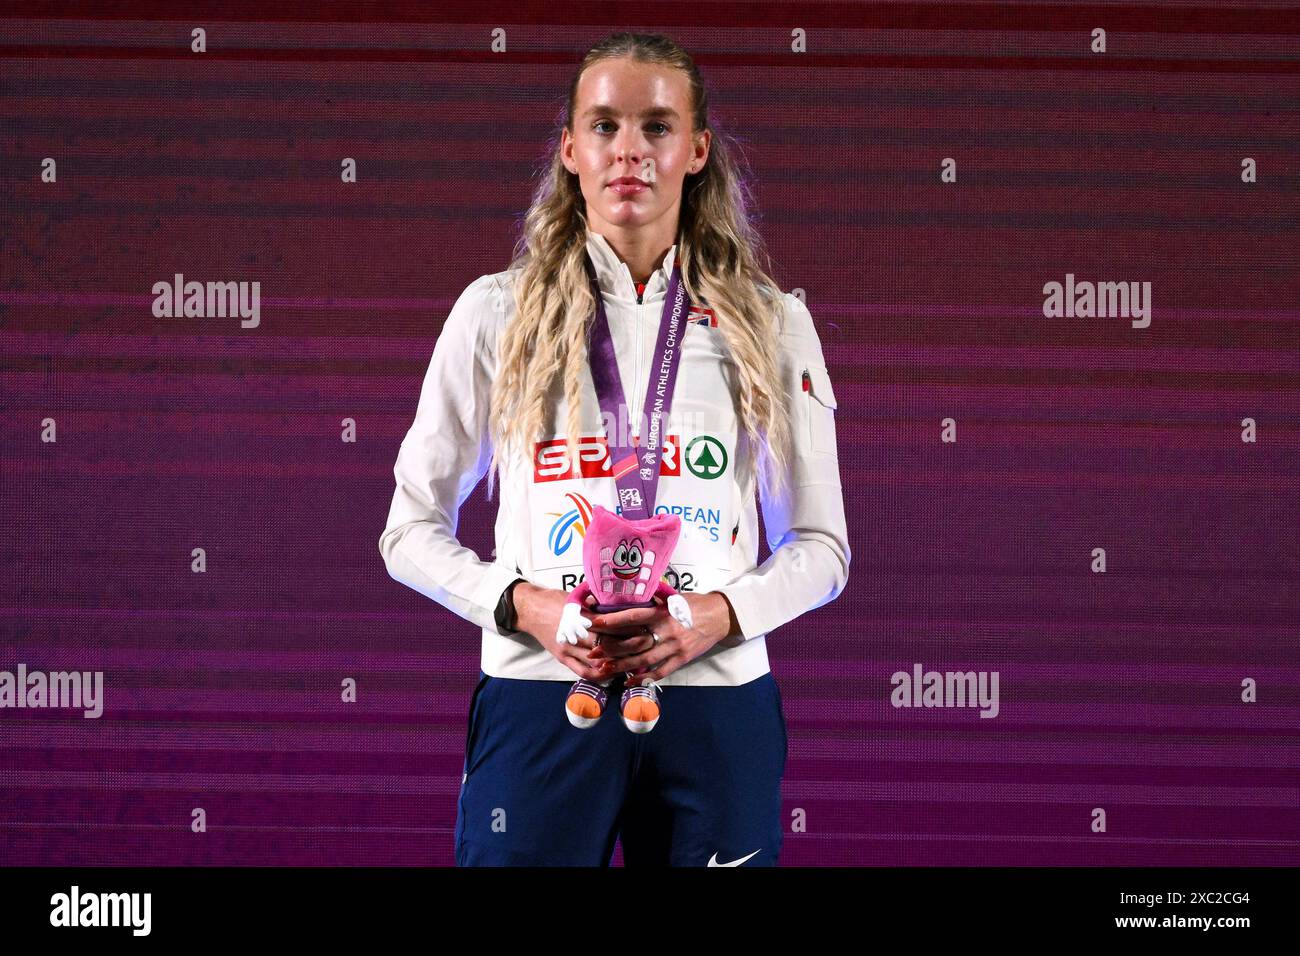 Keely Hodgkinson, de Grande-Bretagne, lors de la remise des médailles du 800 m féminin lors des Championnats d'Europe d'athlétisme au stade Olimpico à Rome (Italie), le 12 juin 2024. Keely Hodgkinson s'est classé premier en remportant la médaille d'or. Banque D'Images